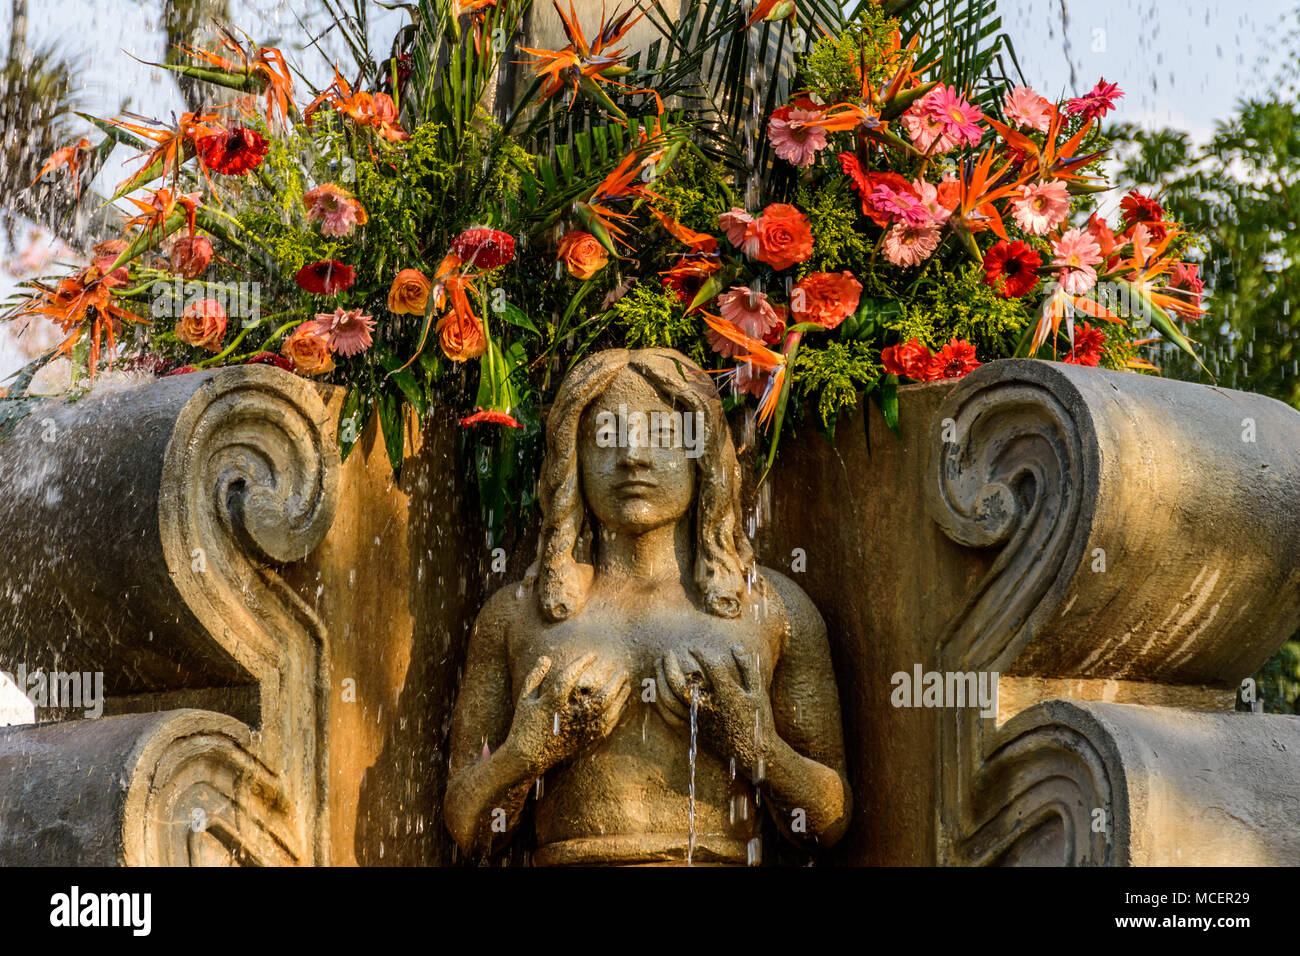 Antigua, Guatemala - 9 mars, 2018 : Mermaid fontaine en place centrale de la ville coloniale et site du patrimoine mondial de l'UNESCO Banque D'Images